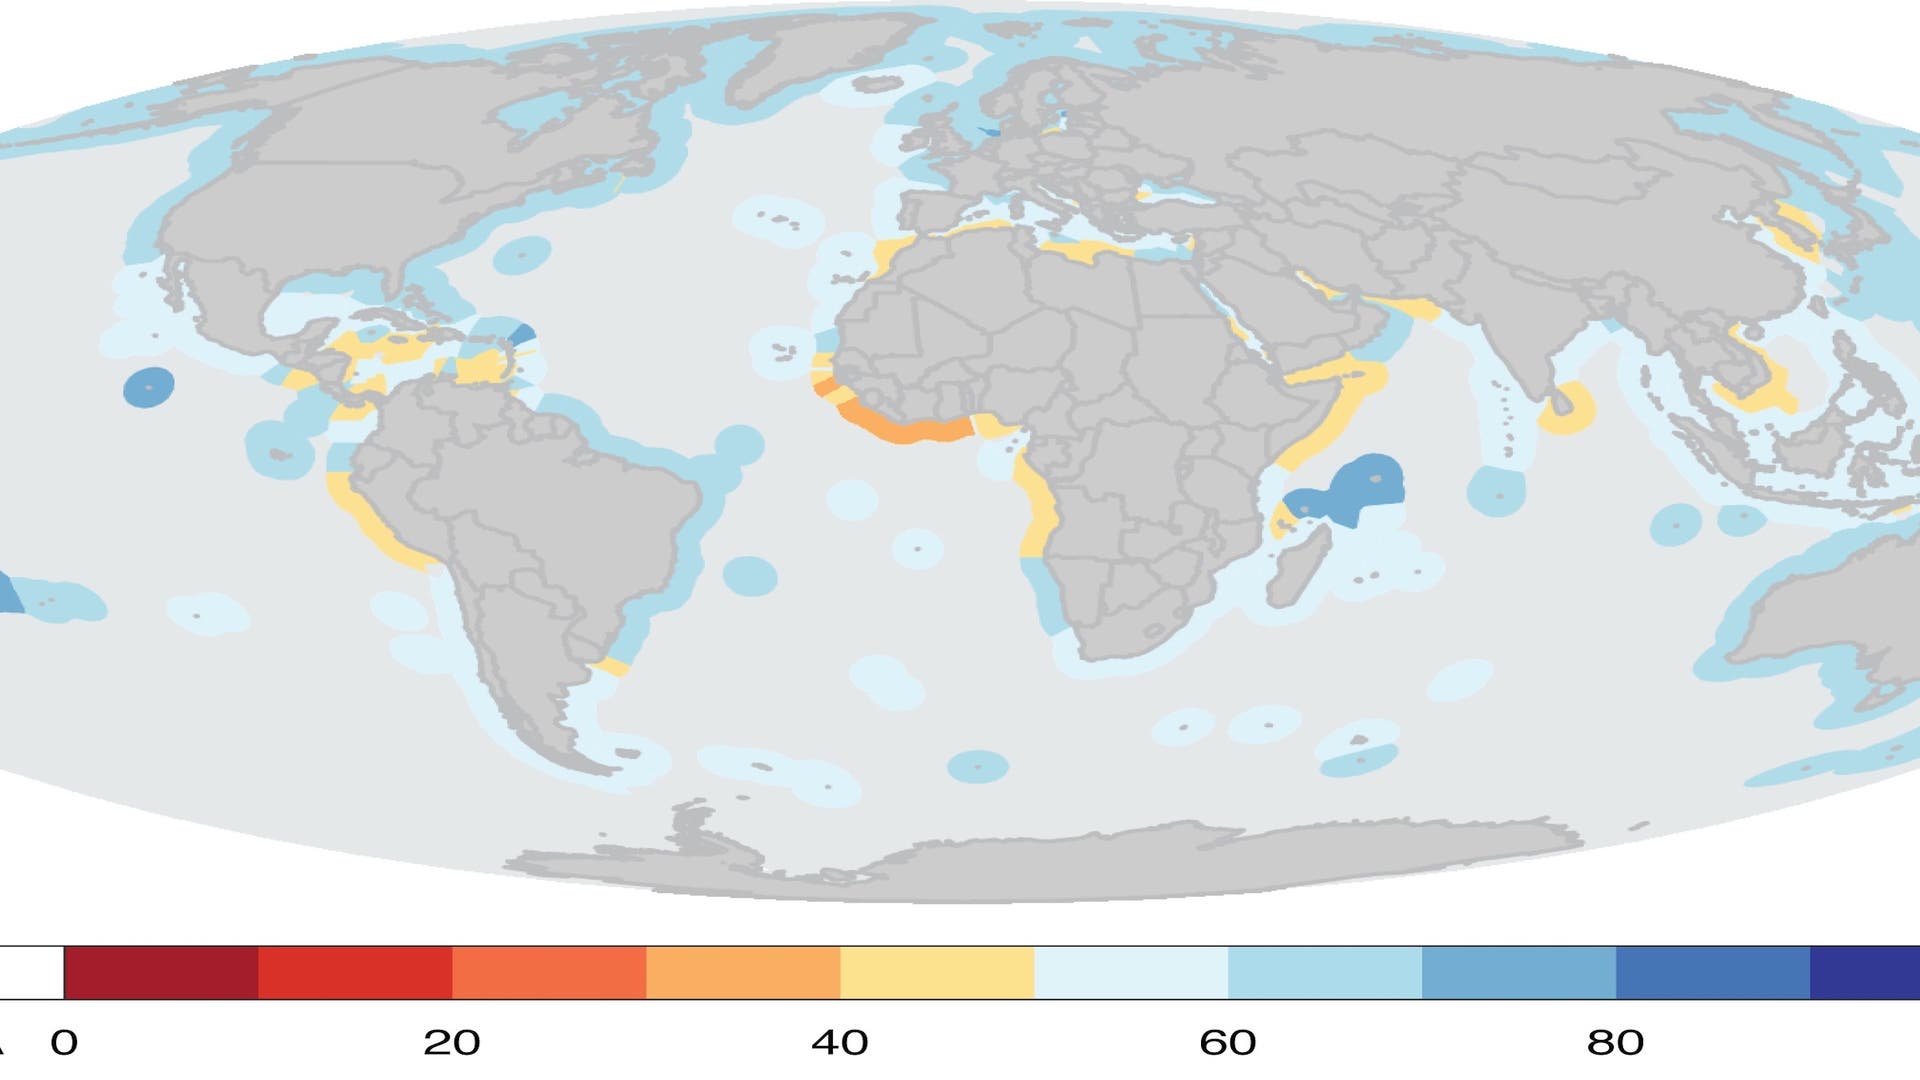 Ozean-Index: Übereinstimmung von Zielen und Ist-Zustand